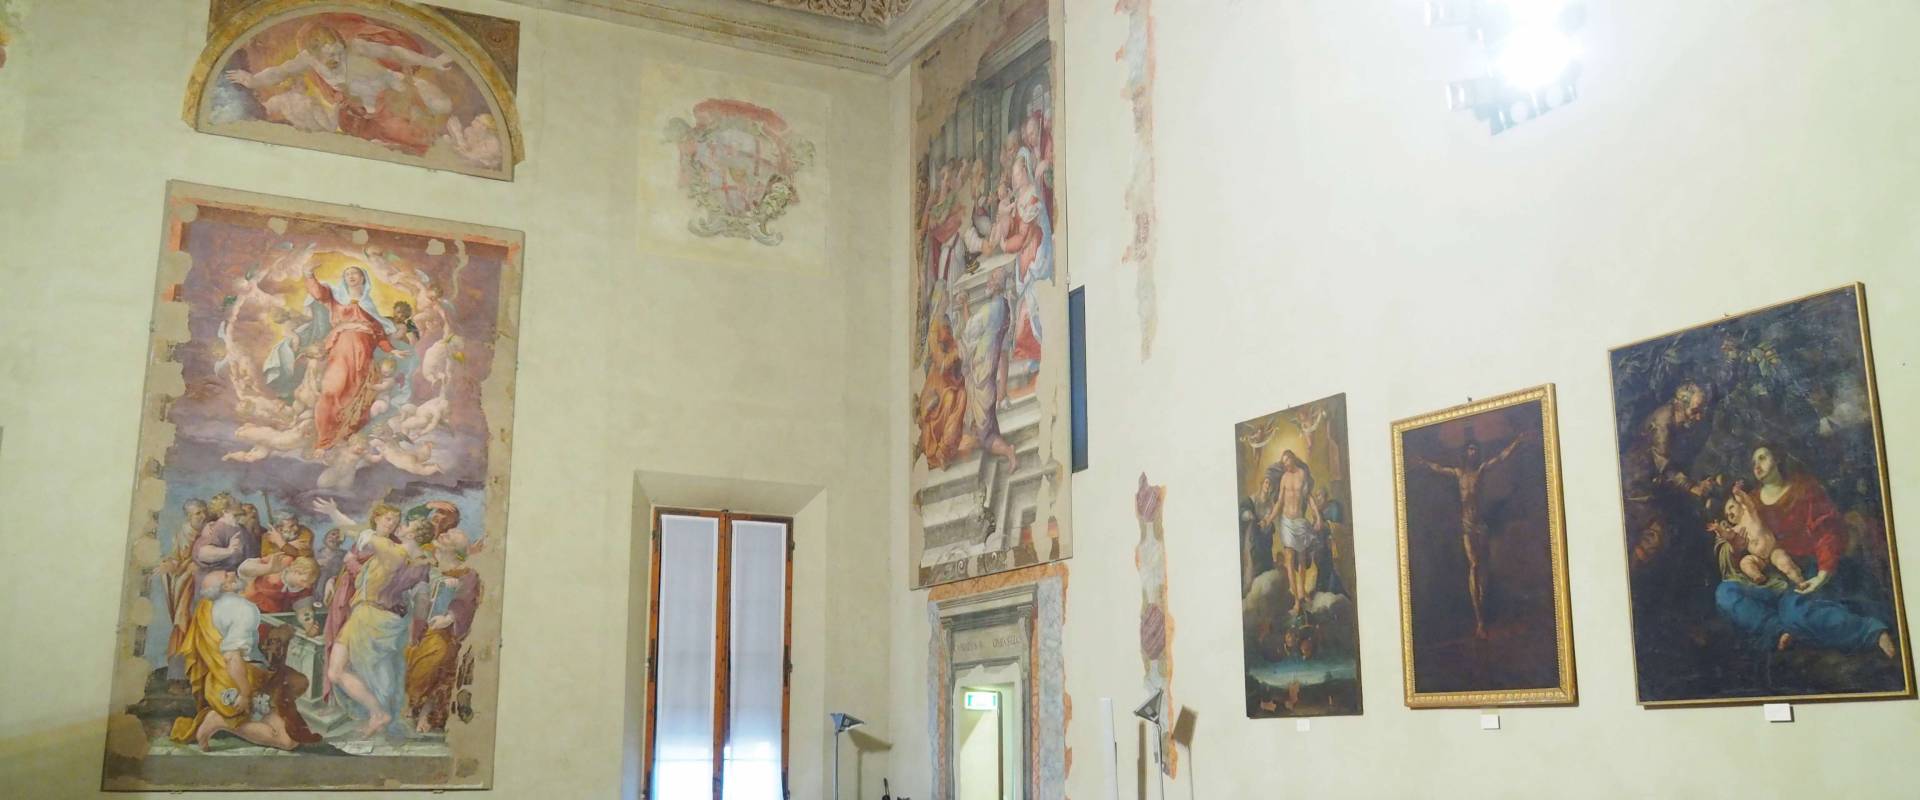 Palazzo d'Accursio-Cappella Farnese 1 foto di MarkPagl